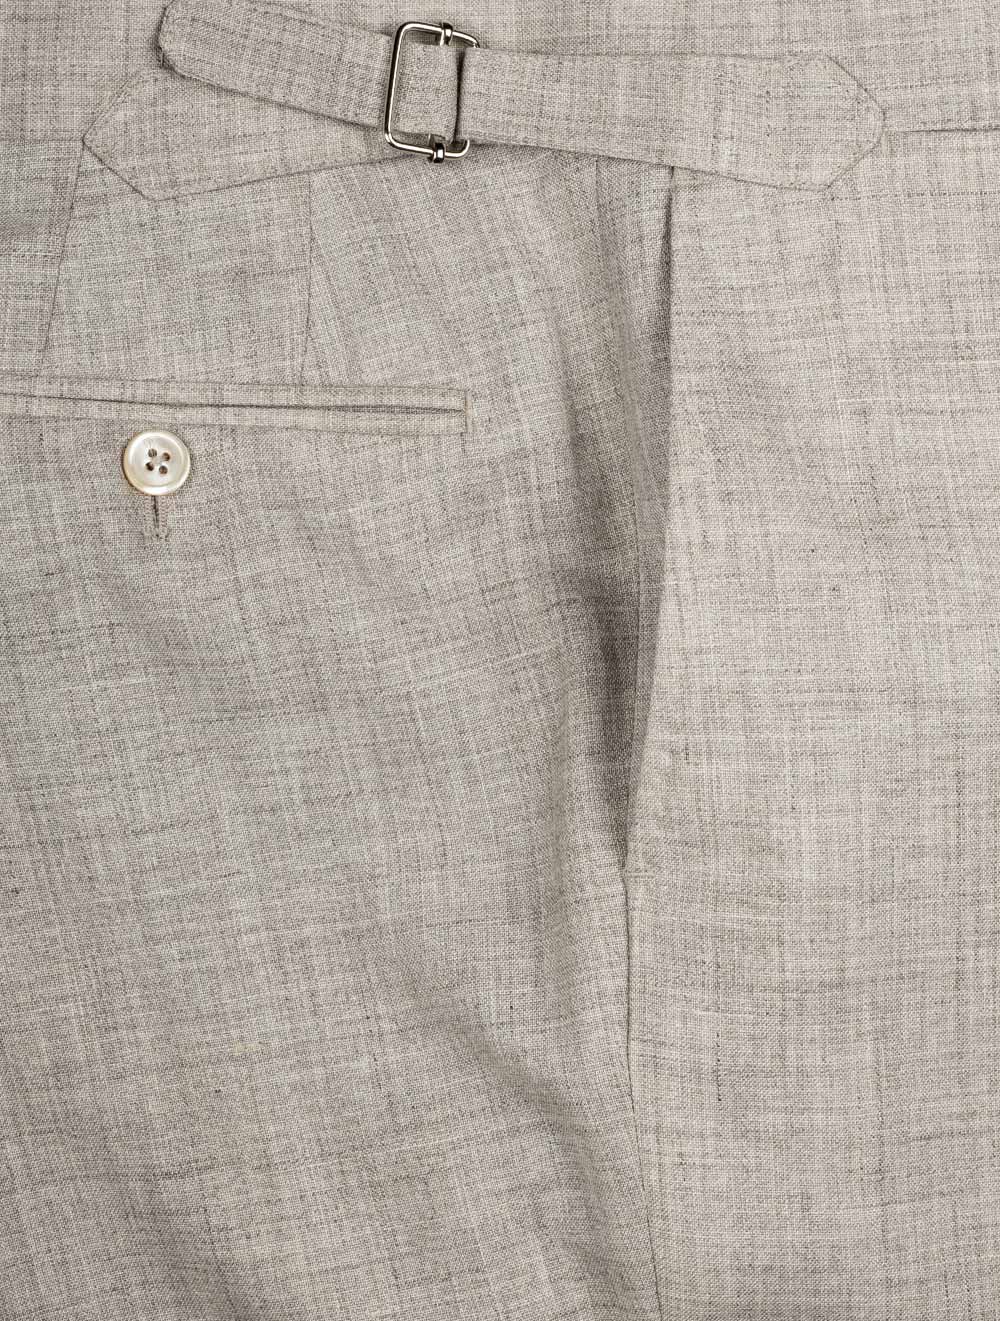 Louis Copeland Loro Piana Summertime Suit Beige 2 piece 2 button notch lapel soft shoulder flap pockets 5